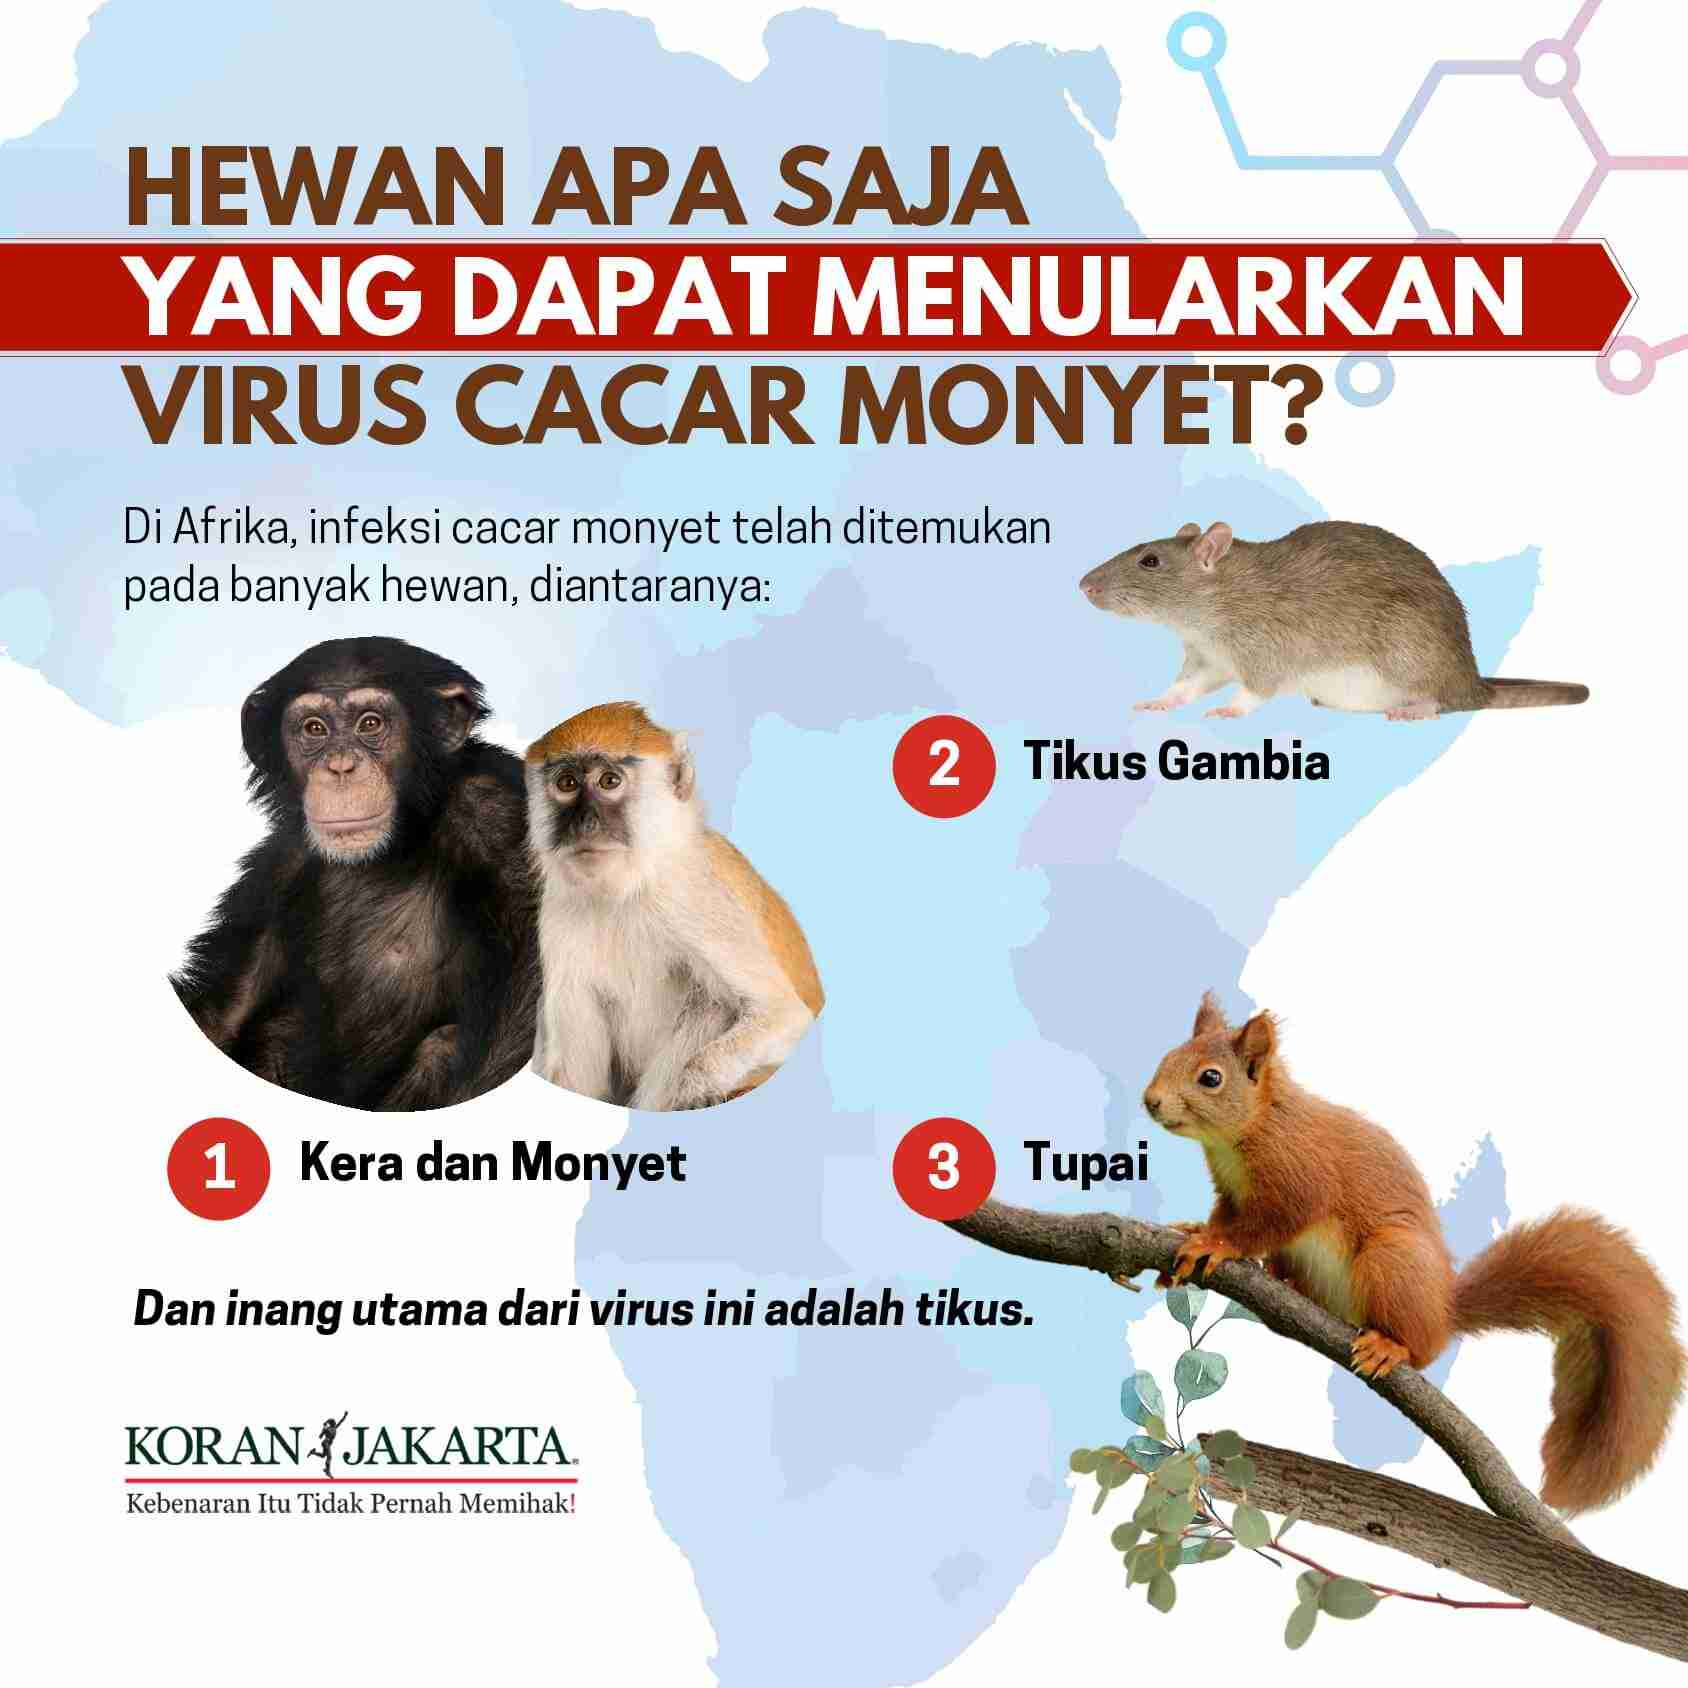 Cacar Monyet Dapat Menyebabkan Kematian. Apakah Bisa Menular? 3